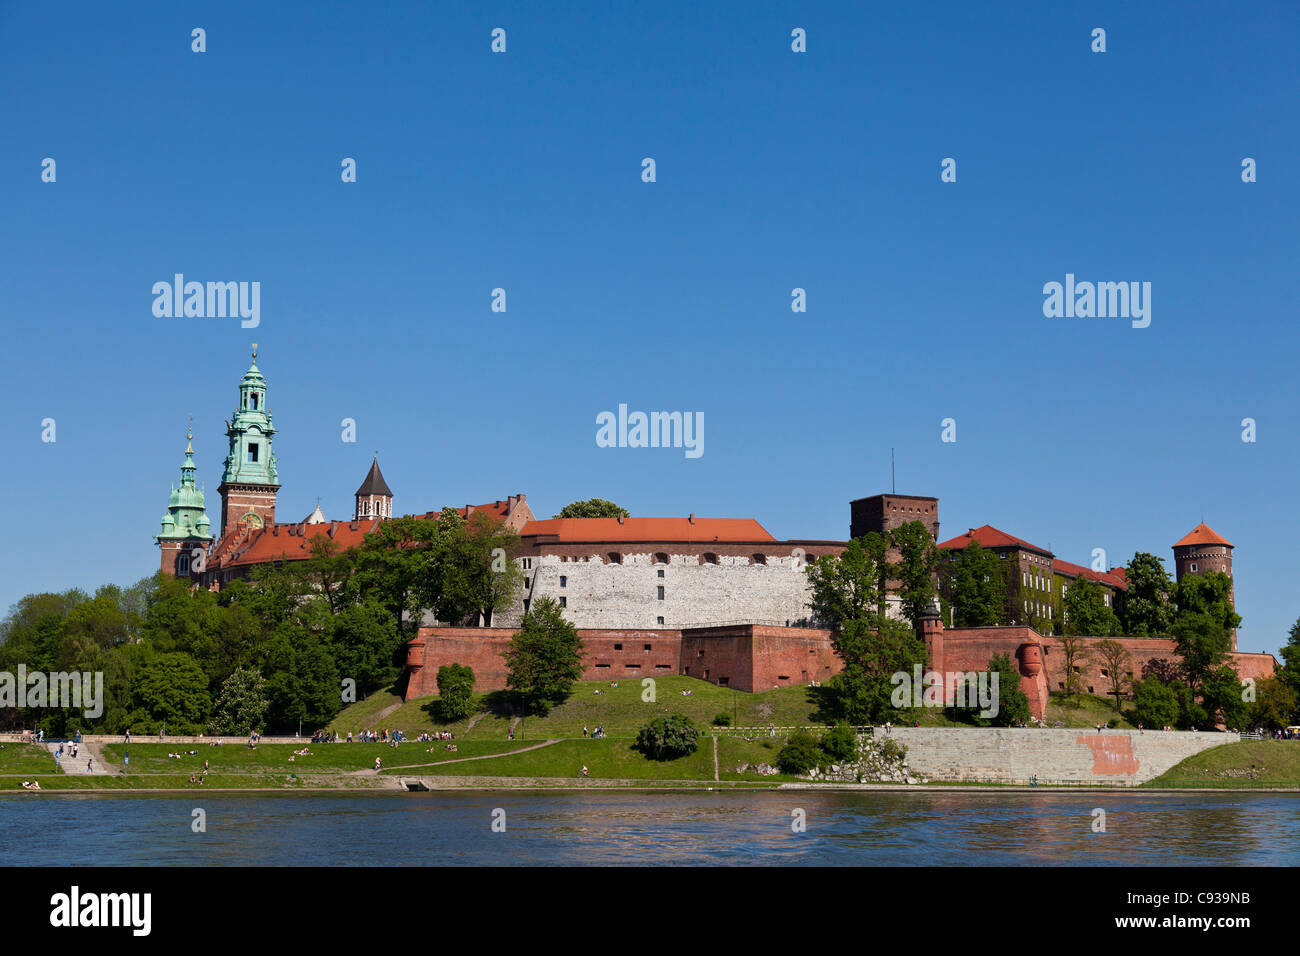 Polen, Krakau. Königsschloss und Krakau Kathedrale auf dem Wawel-Hügel, von der Weichsel gesehen. Stockfoto